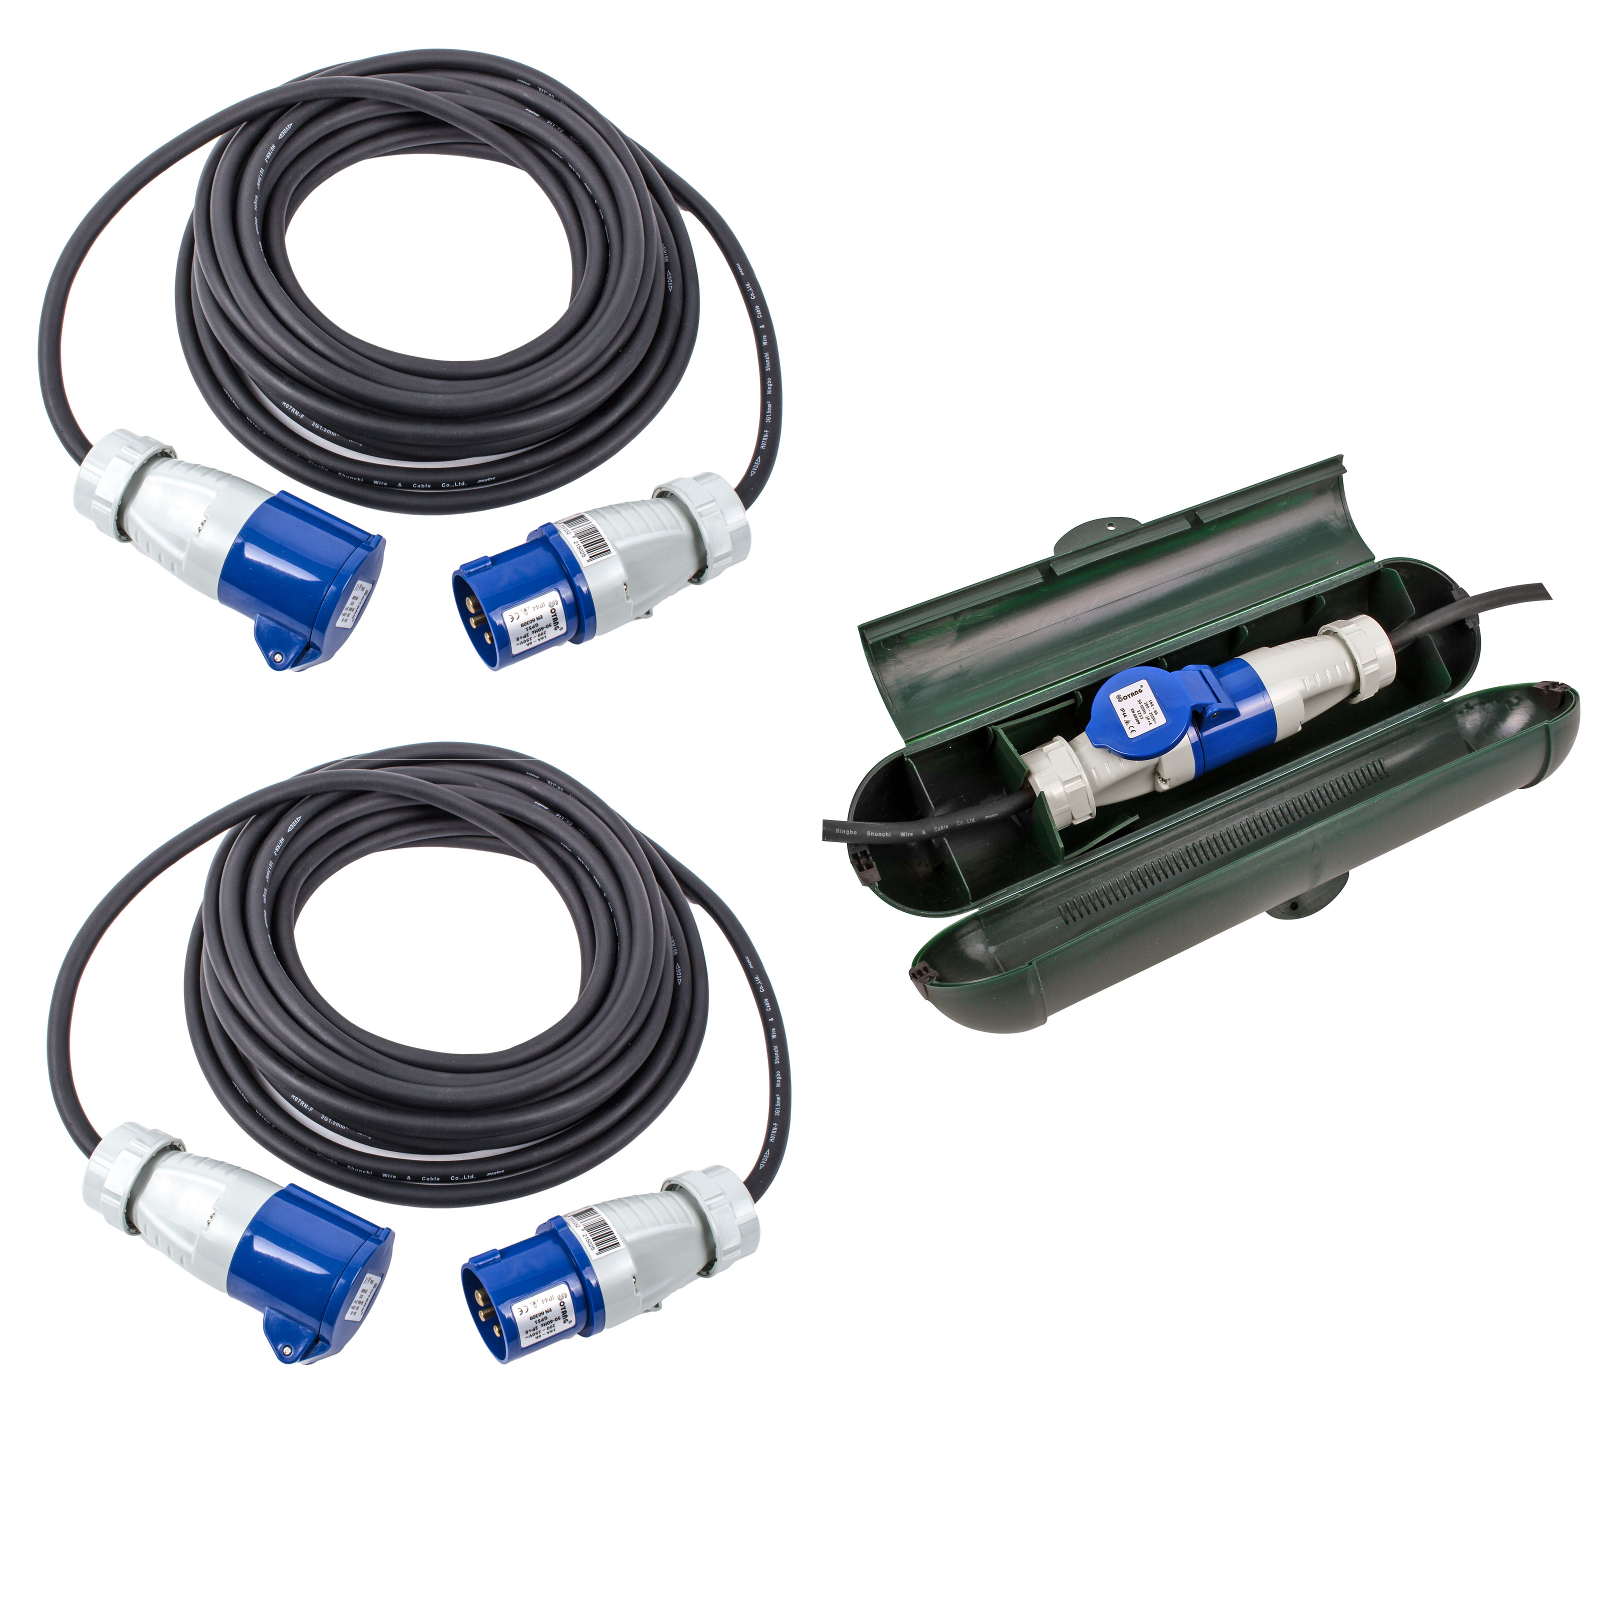 CEE Kabel Set bestehend aus 2x 10 Meter CEE Kabel + CEE Sicherheitsbox